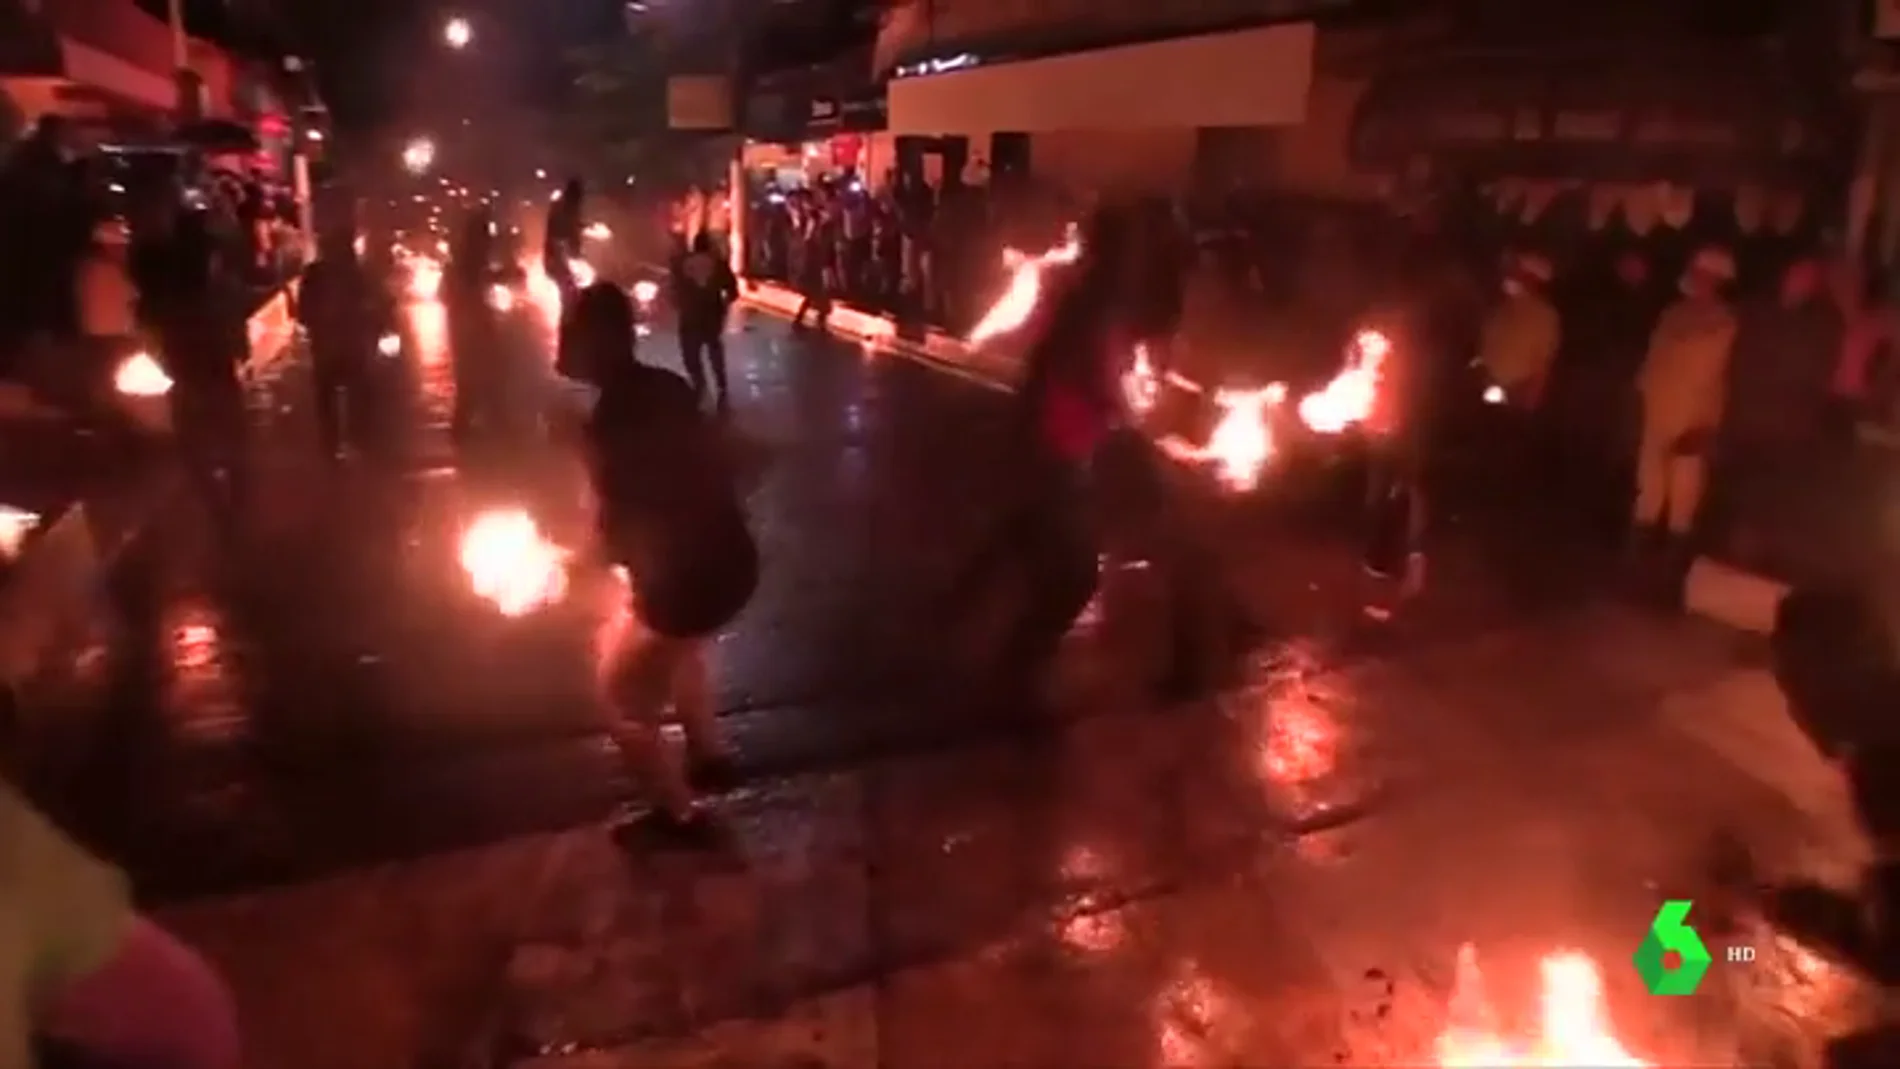 Bañan trapos en gasolina, les prenden fuego y los lanzan: batalla de bolas de fuego en El Salvador